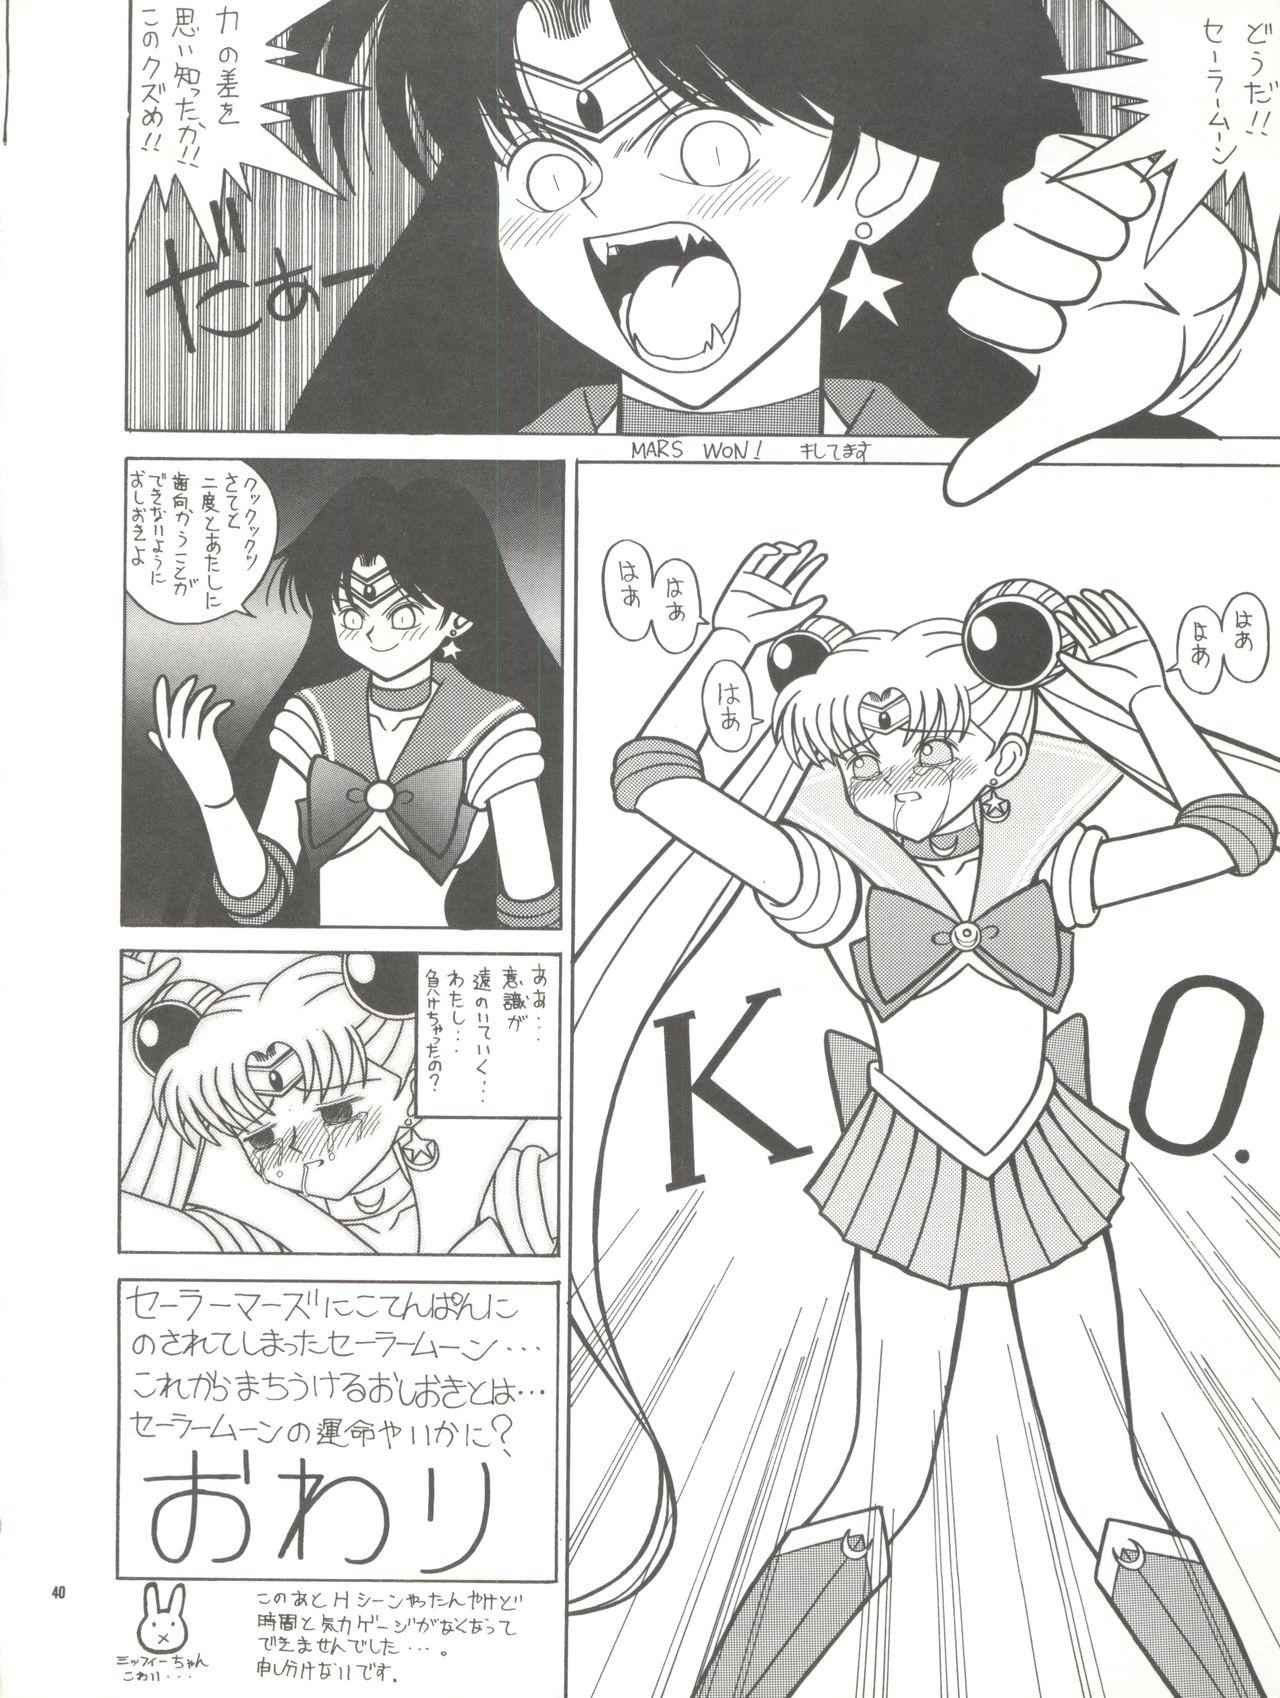 PUSSY CAT Vol. 26 Sailor Moon 3 39